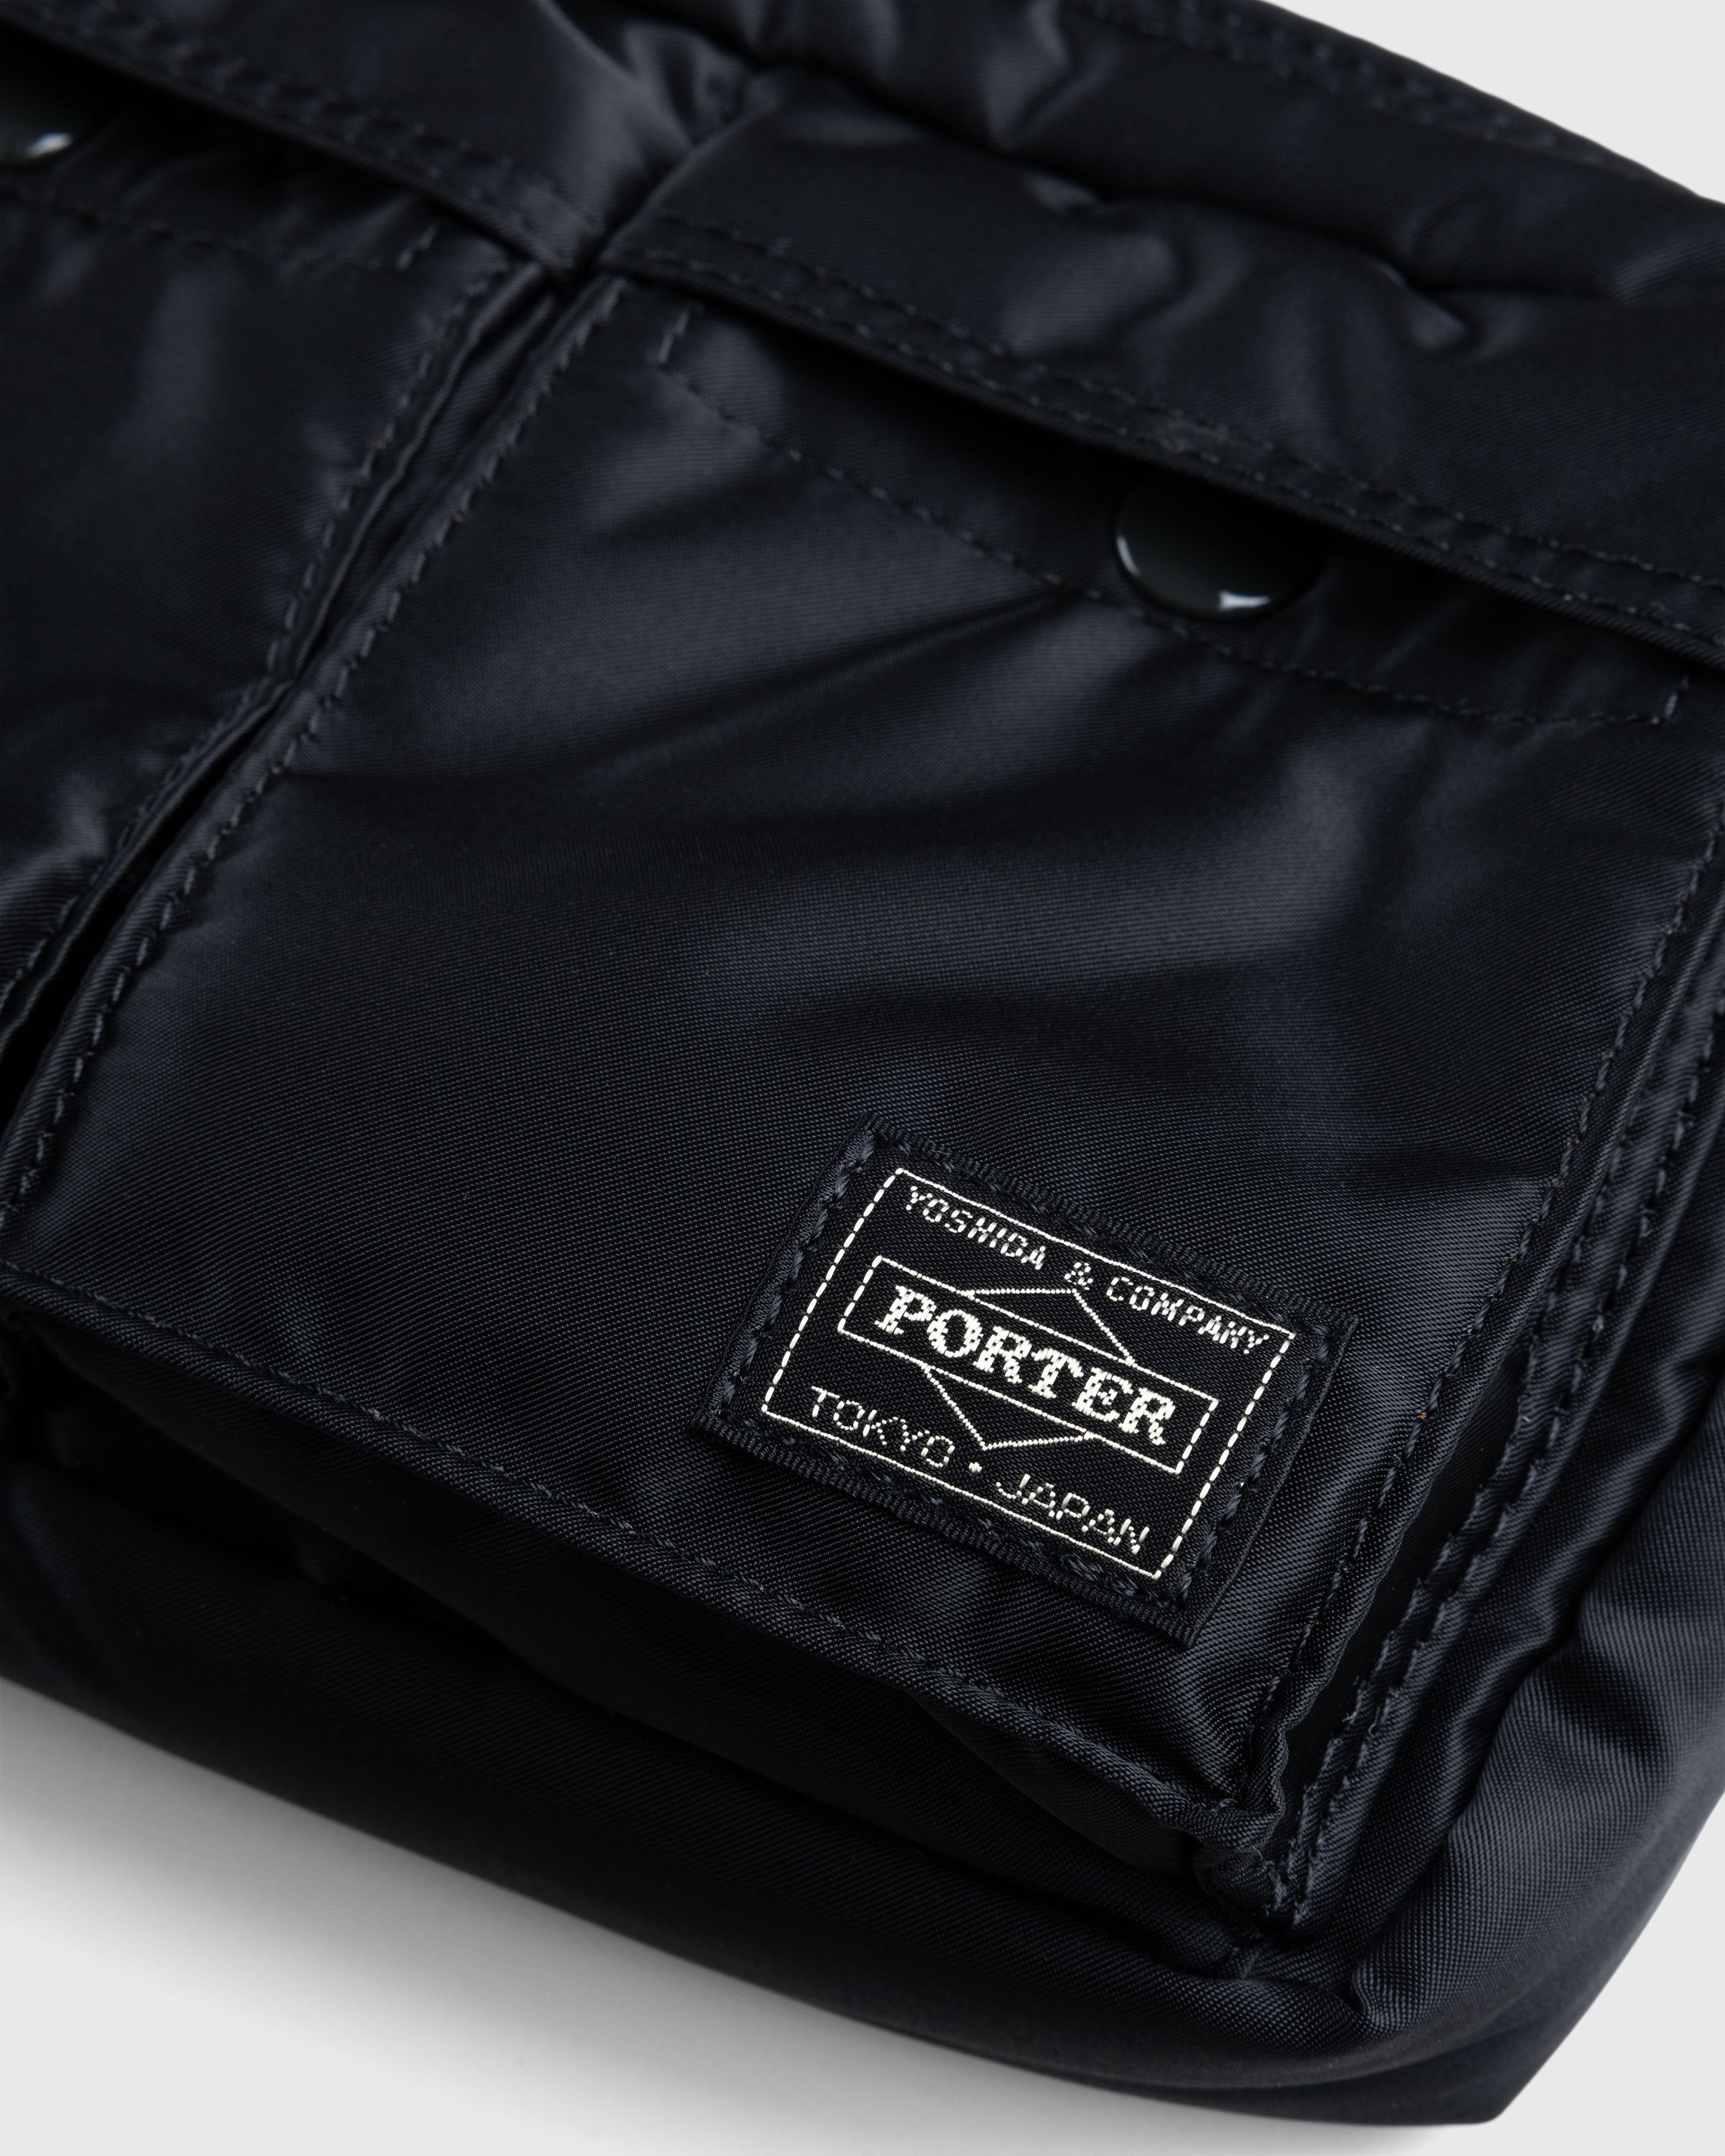 Porter-Yoshida & Co. - Tanker Shoulder Bag Black - Accessories - Black - Image 4